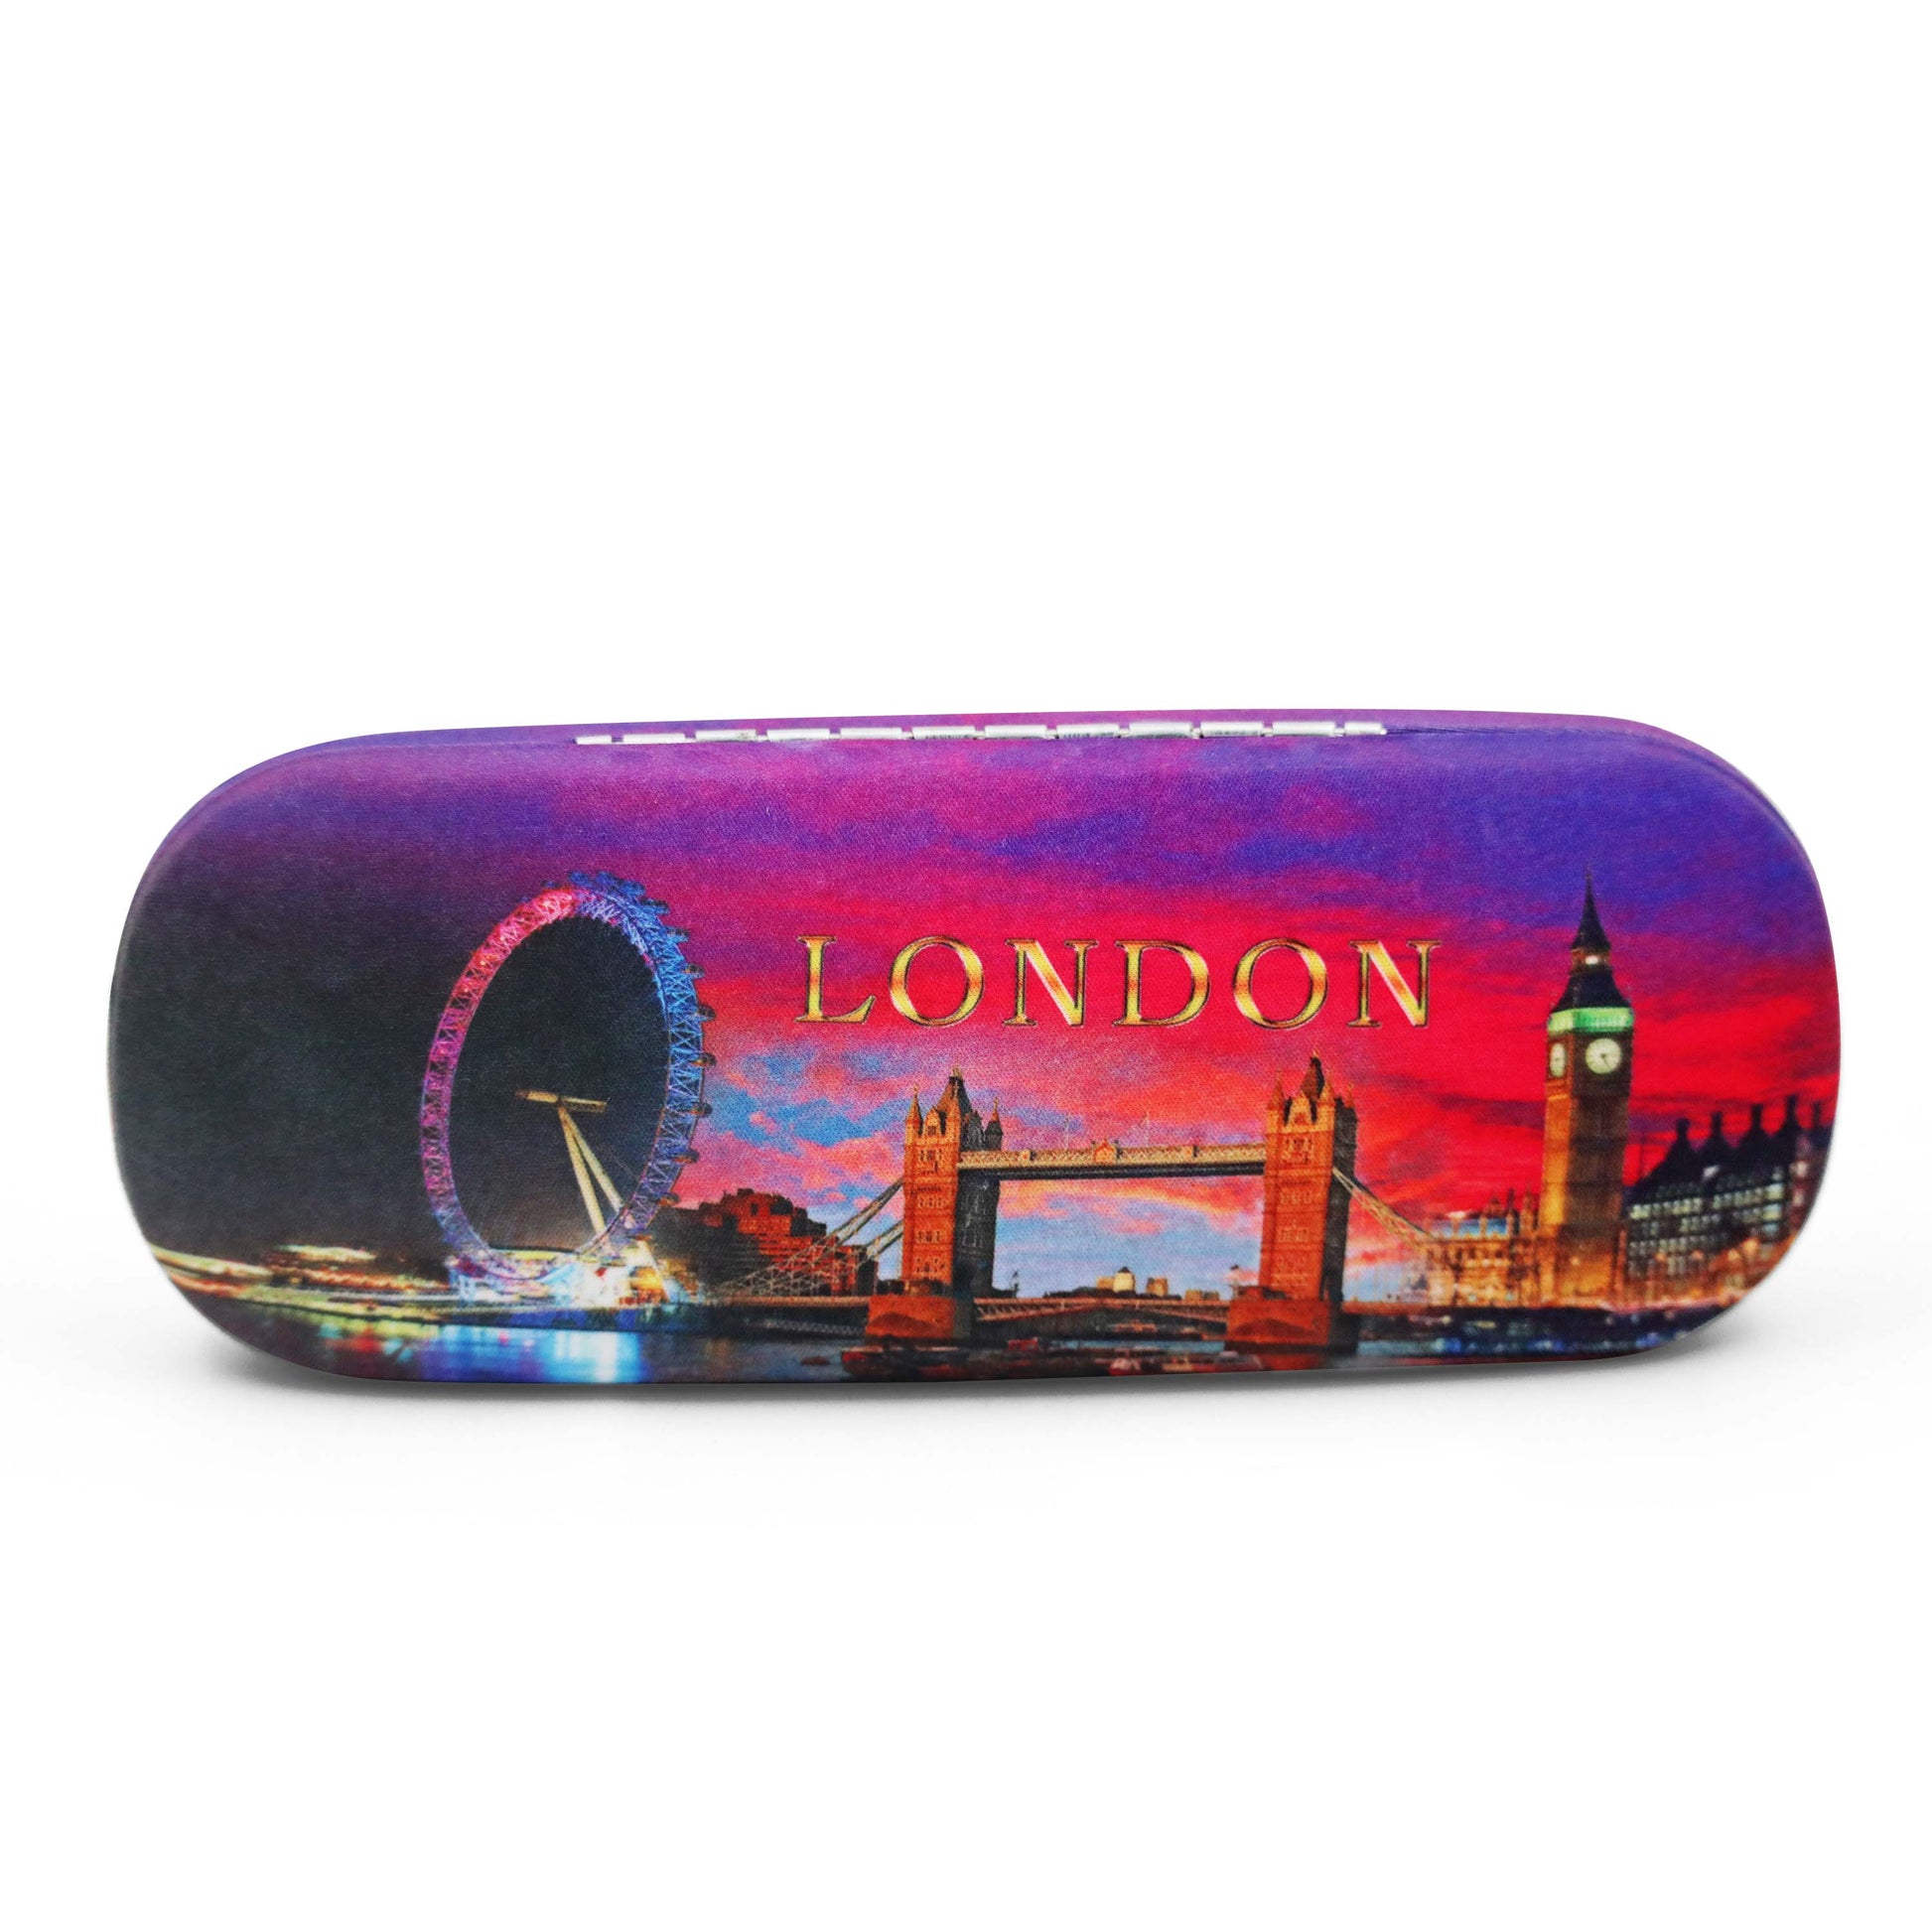 London City Skyline Glasses Cases - Souvenir Glasses Case